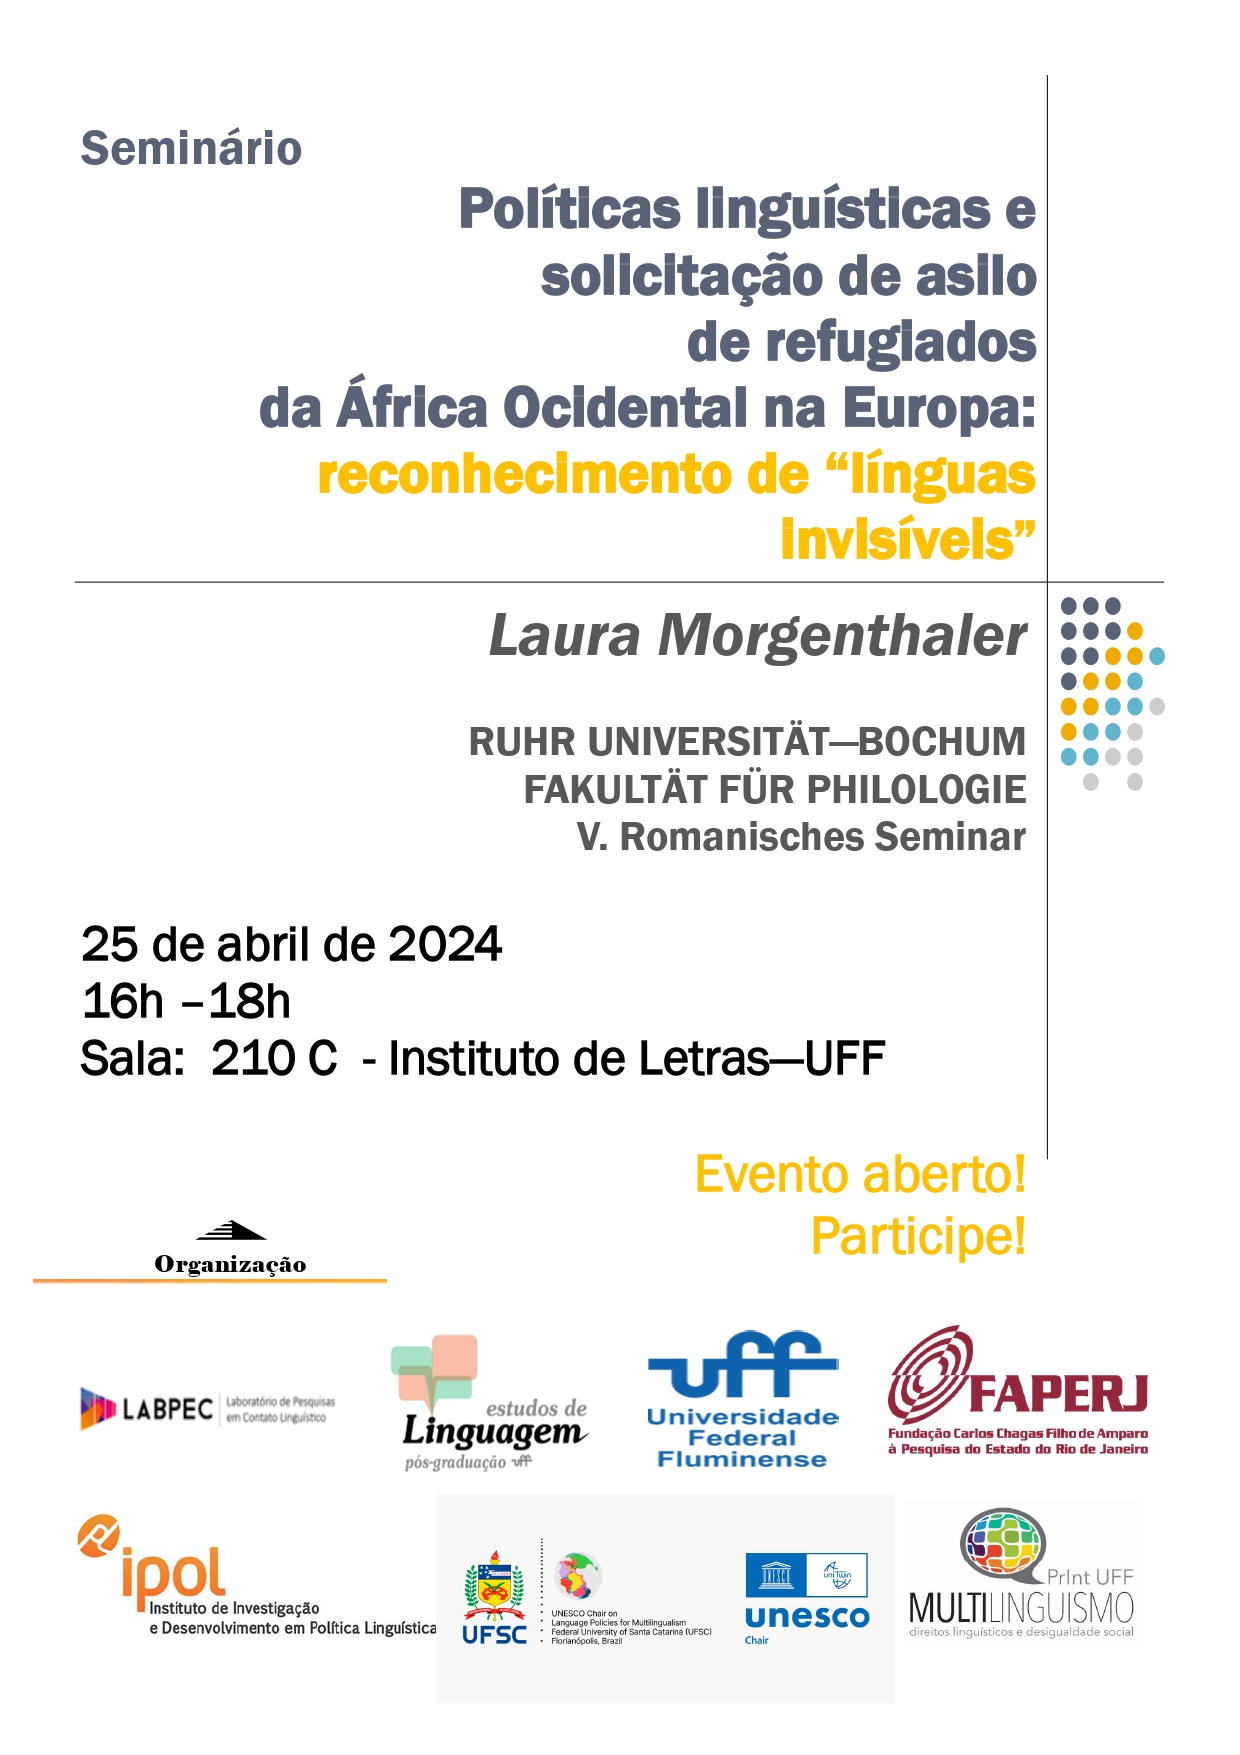 Políticas linguísticas e solicitação de asilo de refugiados da África Ocidental na Europa: reconhecimento de “línguas invisíveis”